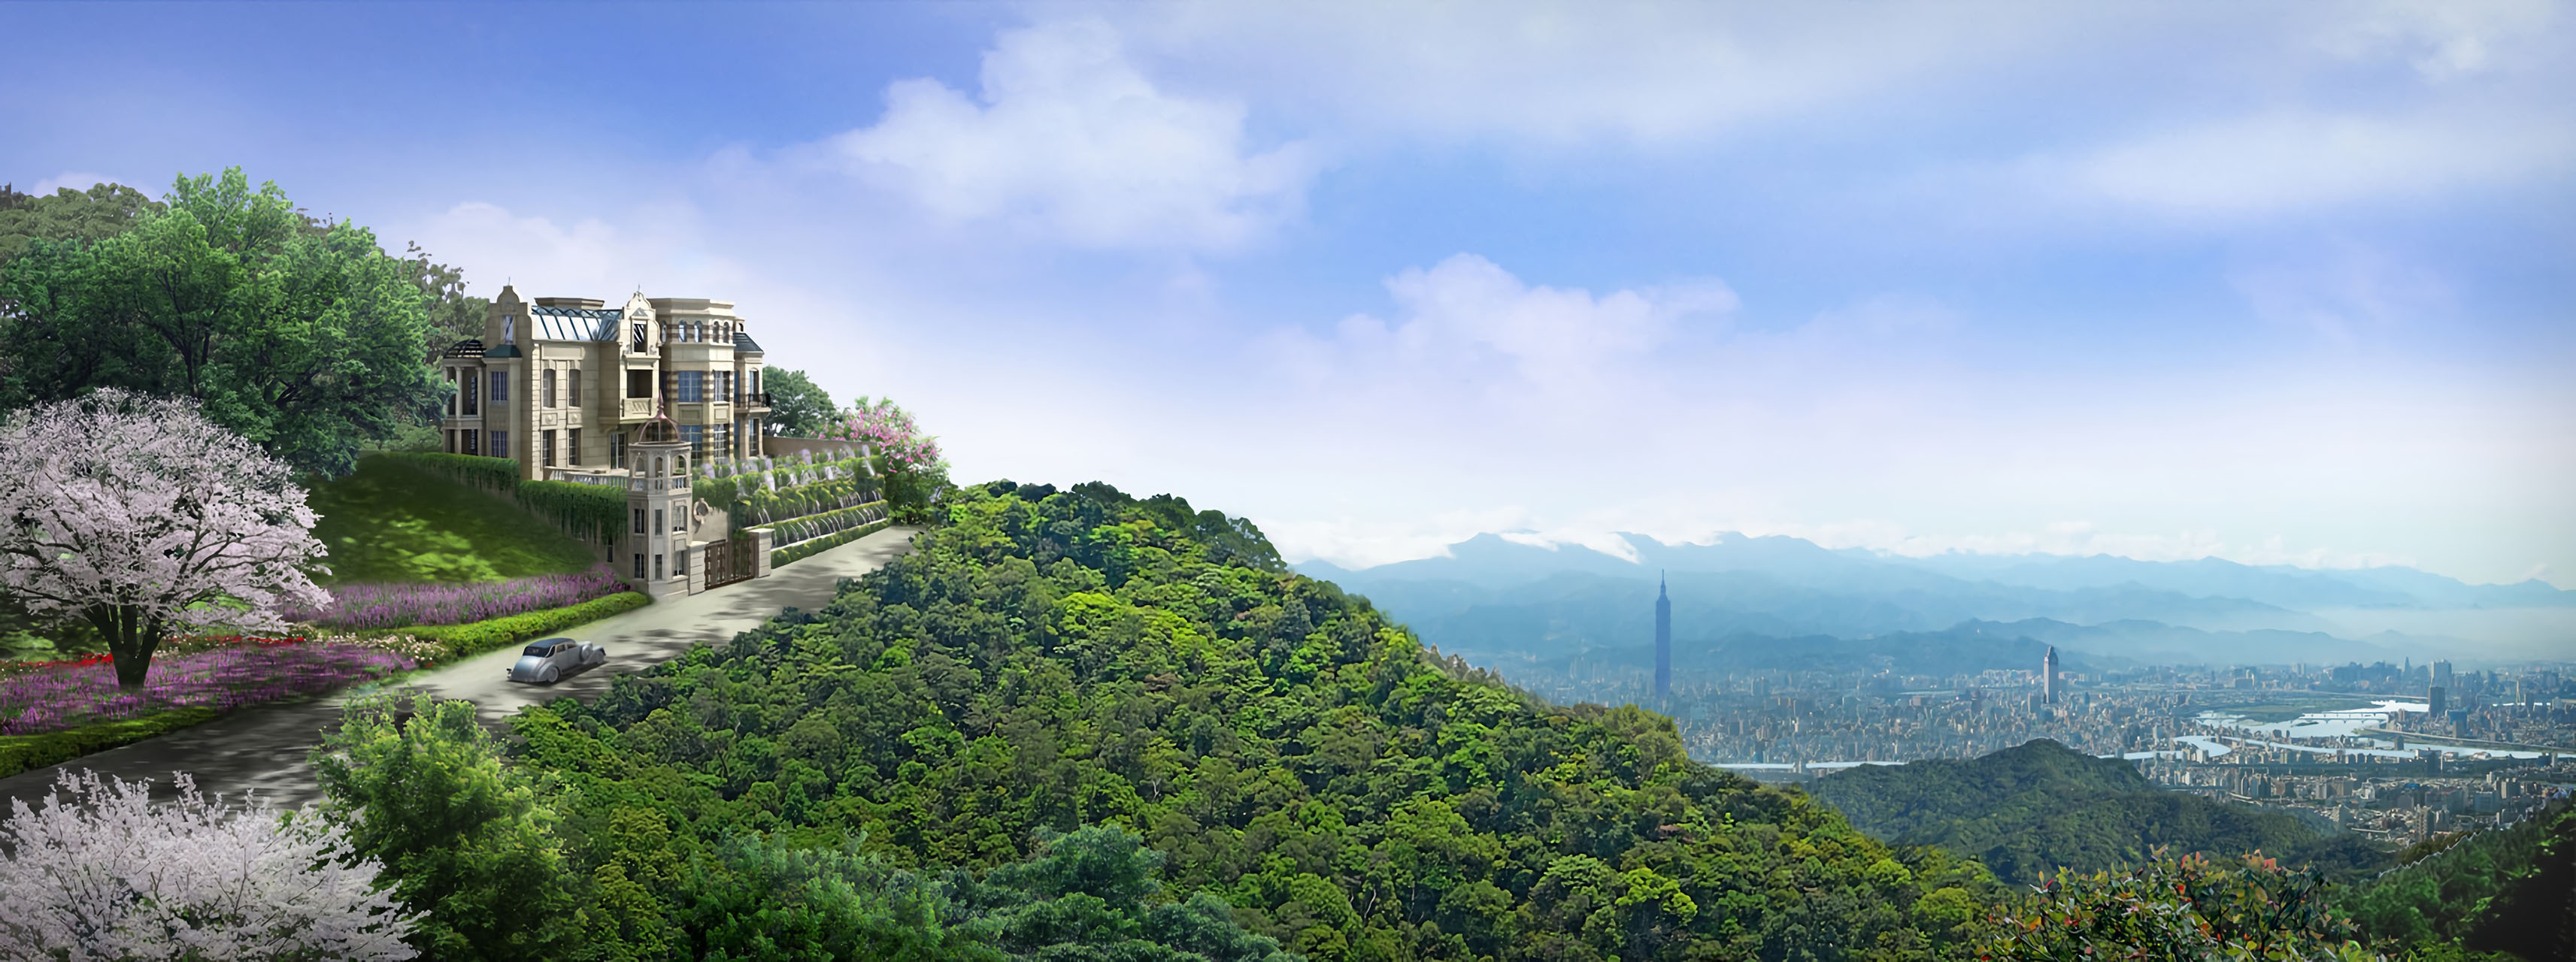 Royal Mountain (Yangming)